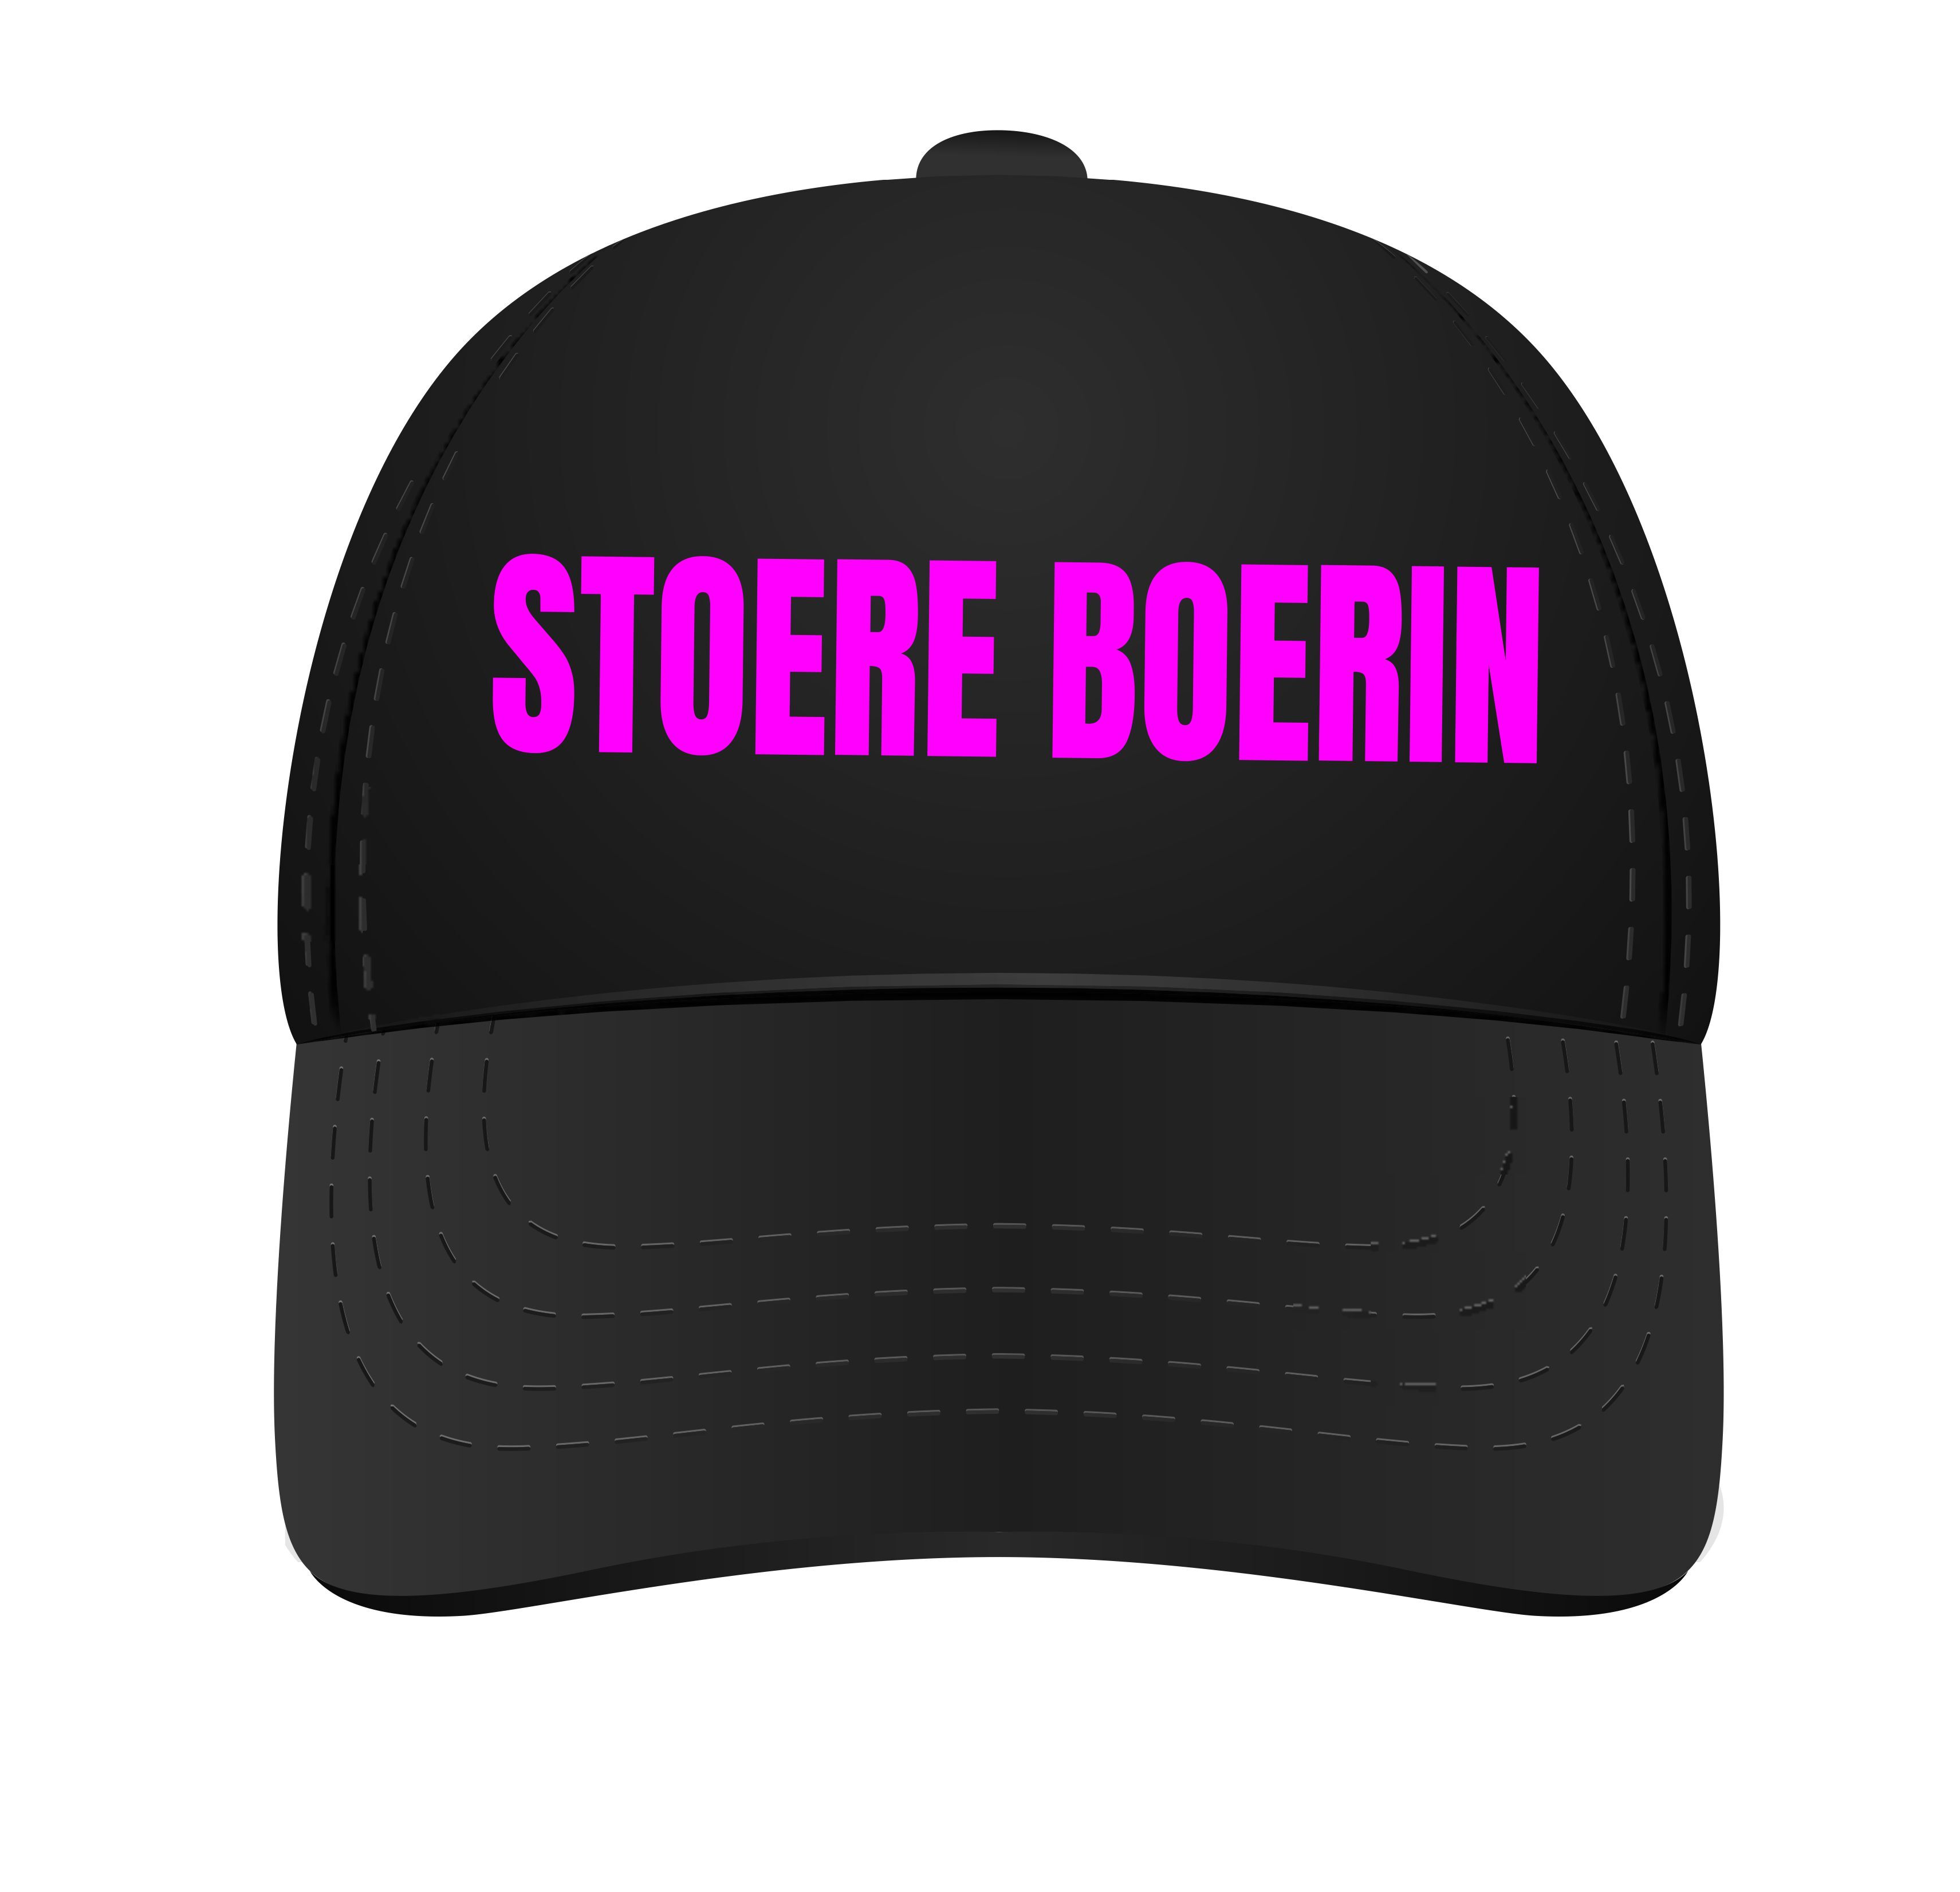 Pet voor Stoere boerin Neon roze letters cap